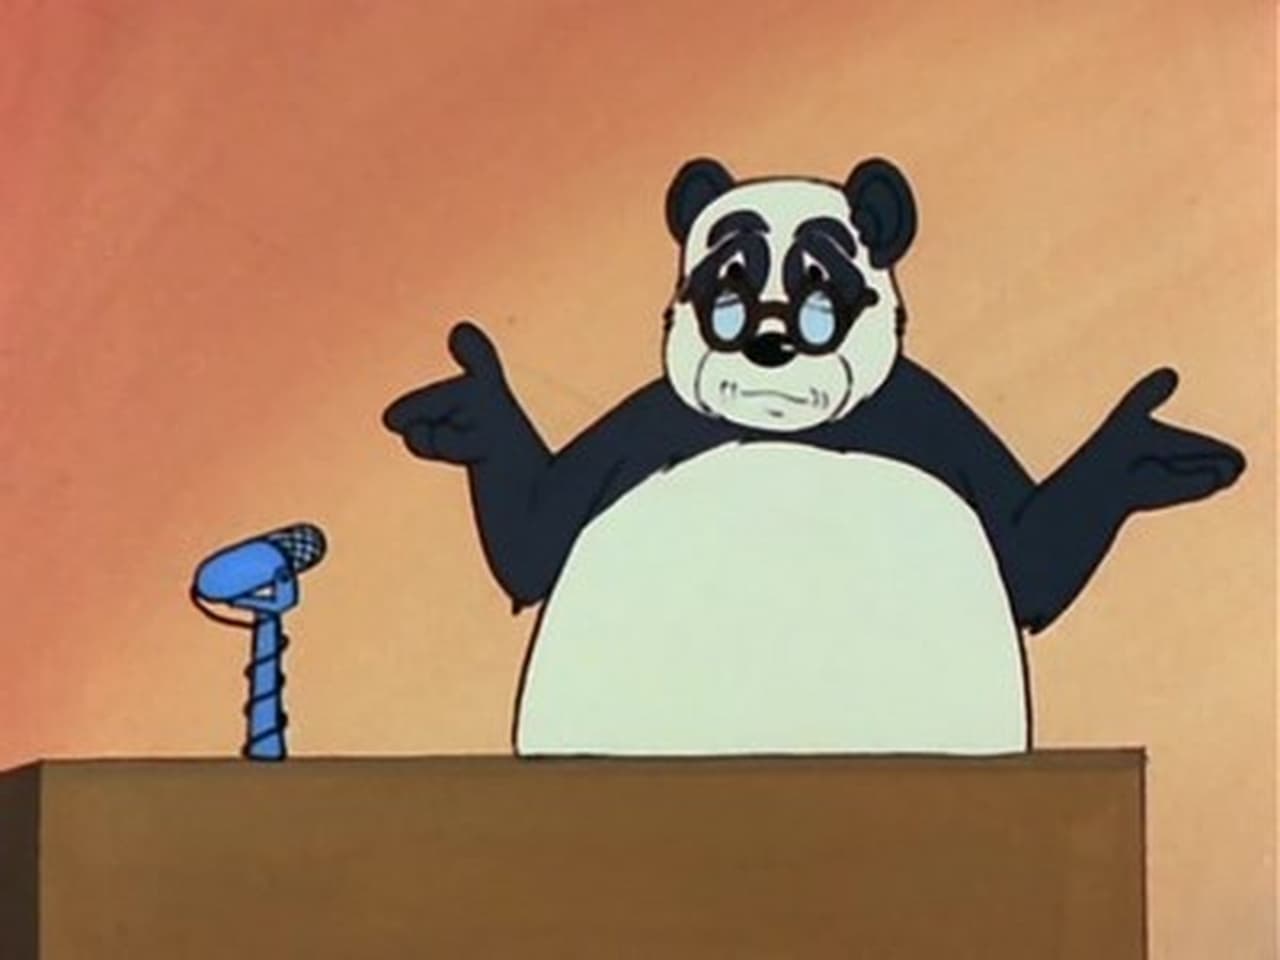 Professor Panda